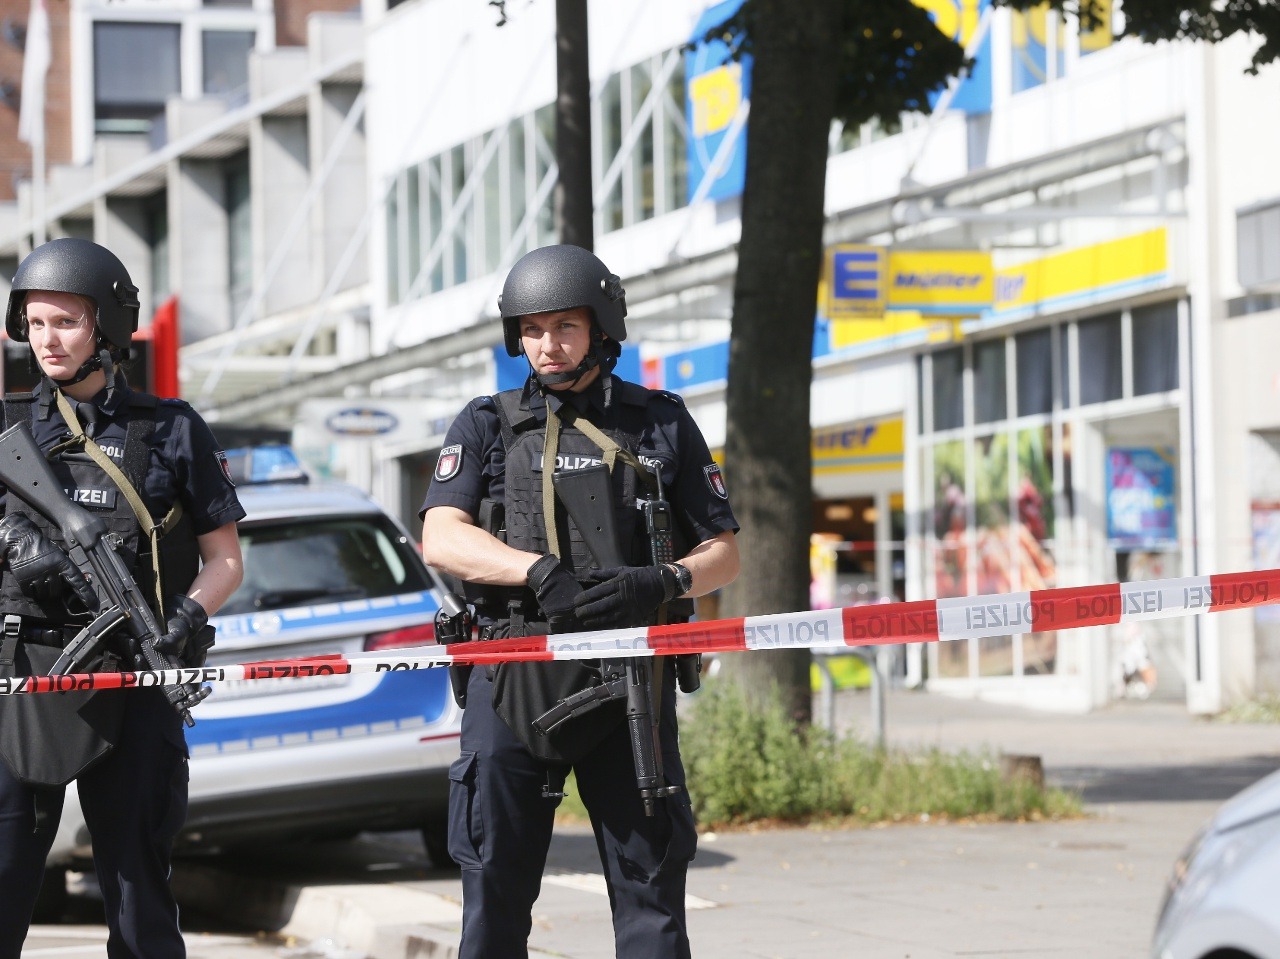 Policajti hliadkujú pred zatvoreným priestorom pred supermarketom v Hamburgu 28. júla 2017.